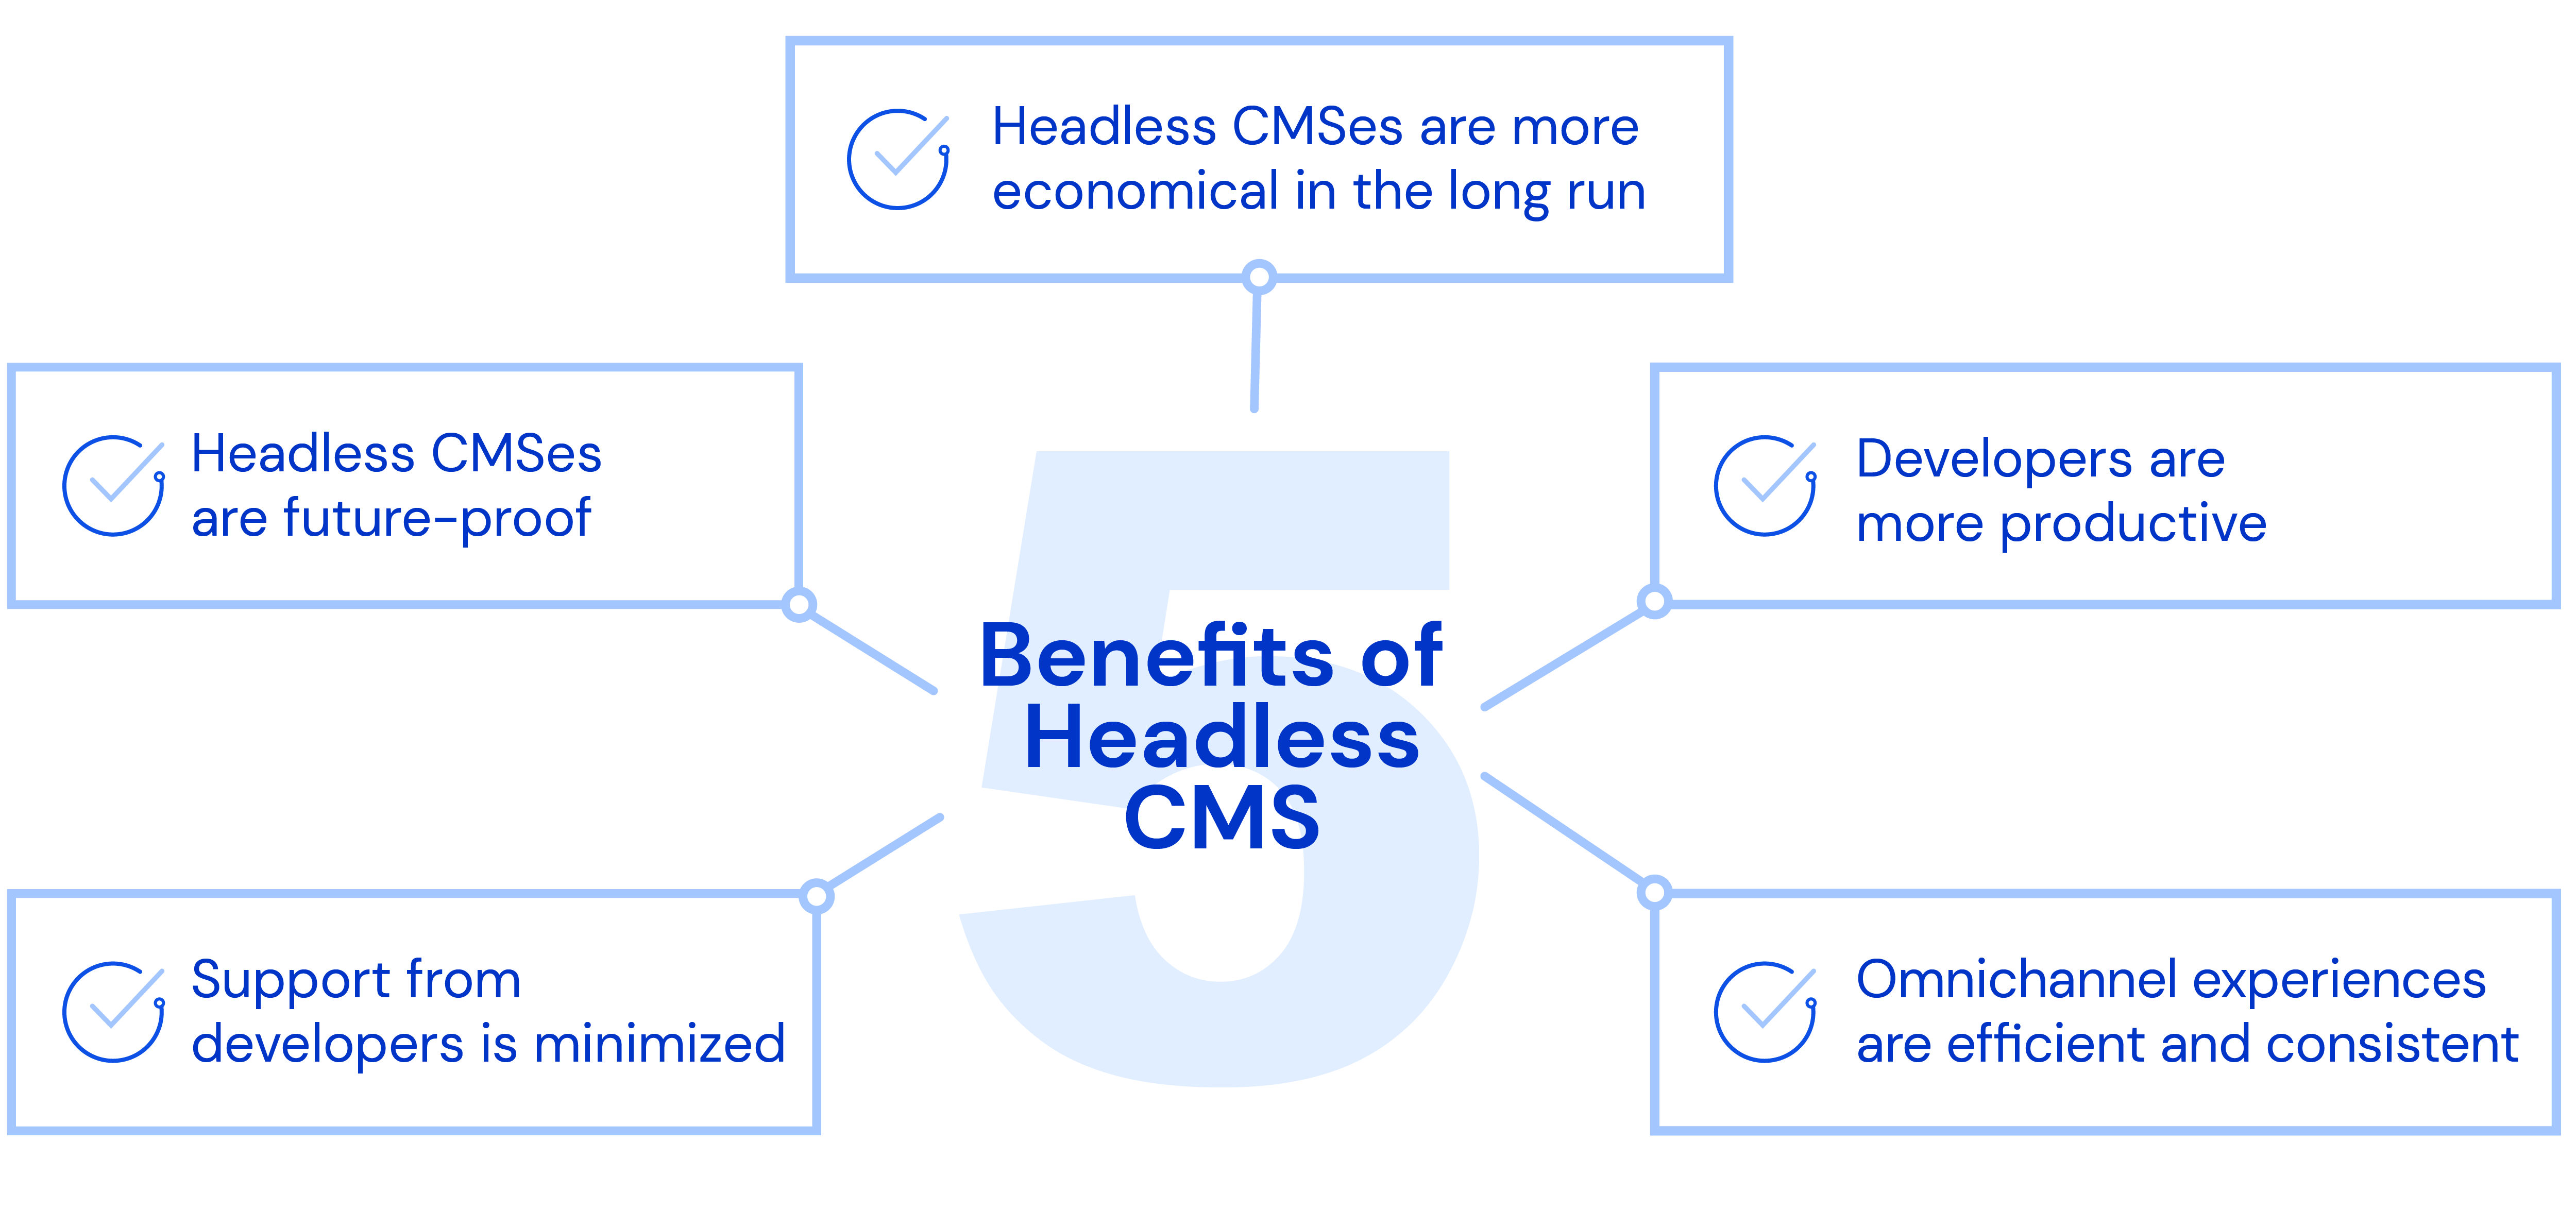 Top 5 Headless CMS Benefits